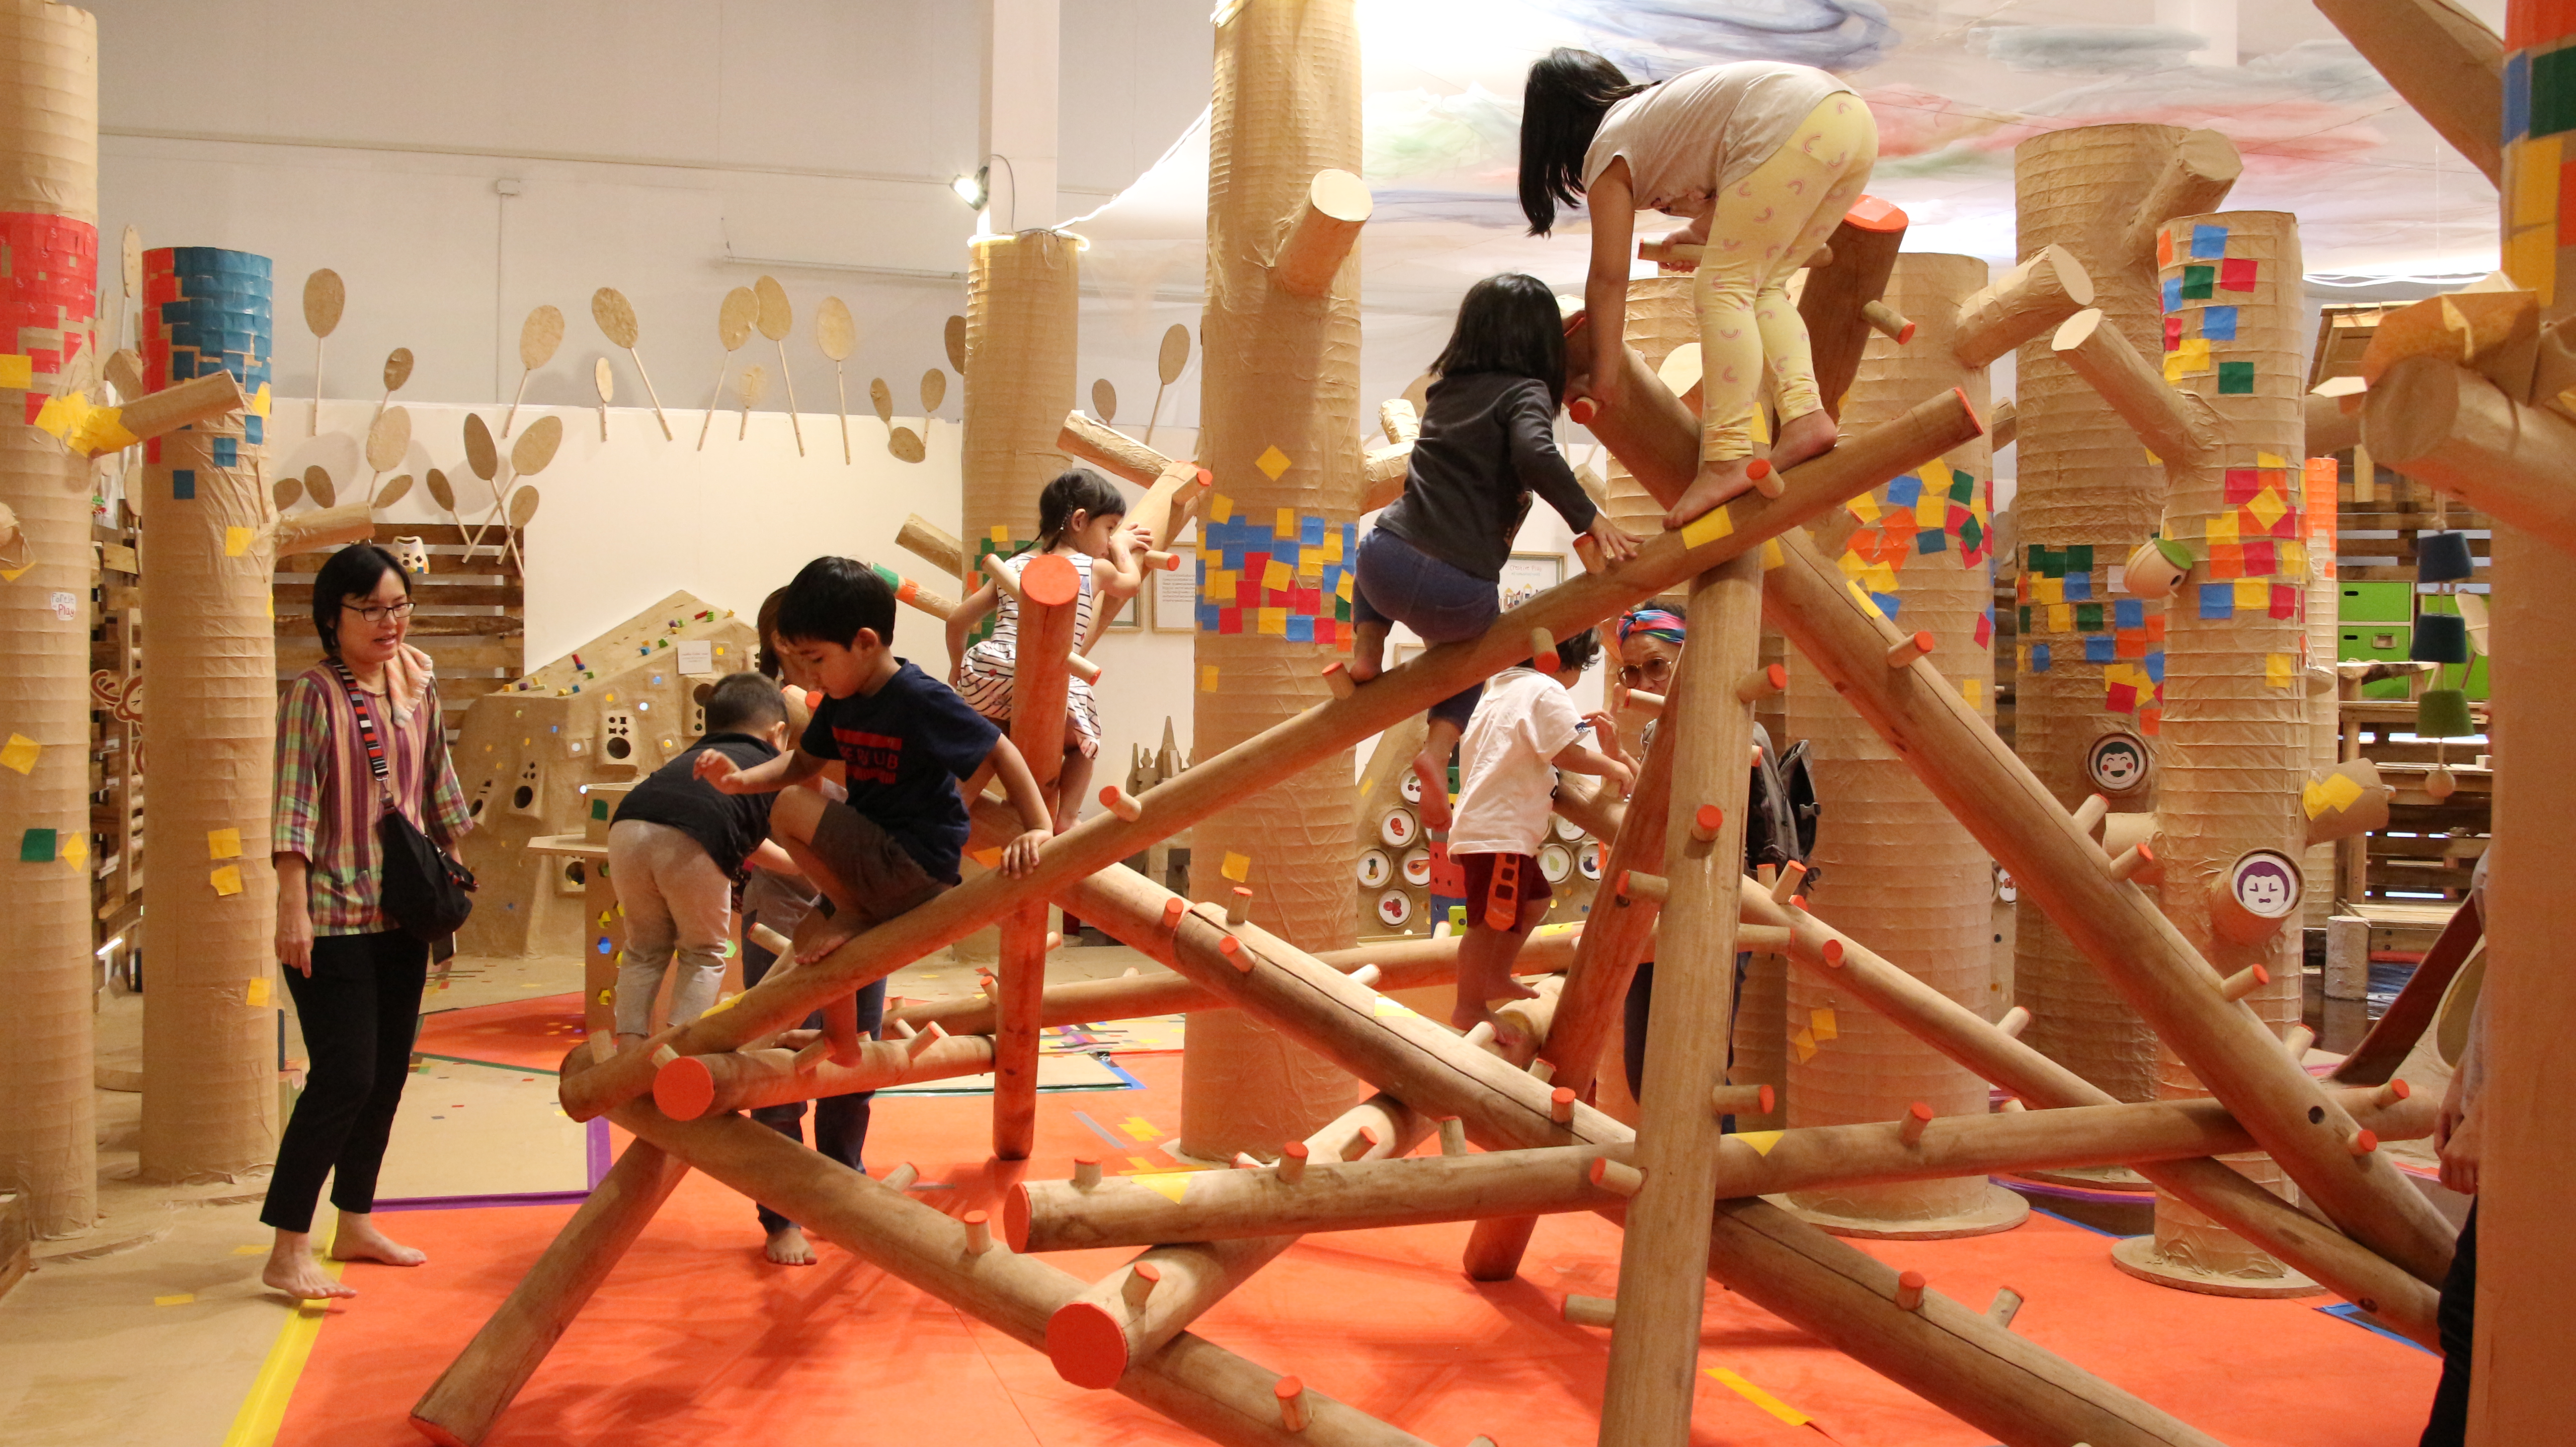 Forest of Play นิทรรศการเล่นได้ขนาดใหญ่กลางเมือง ส่งเสริมพัฒนาการของเด็กรอบด้าน